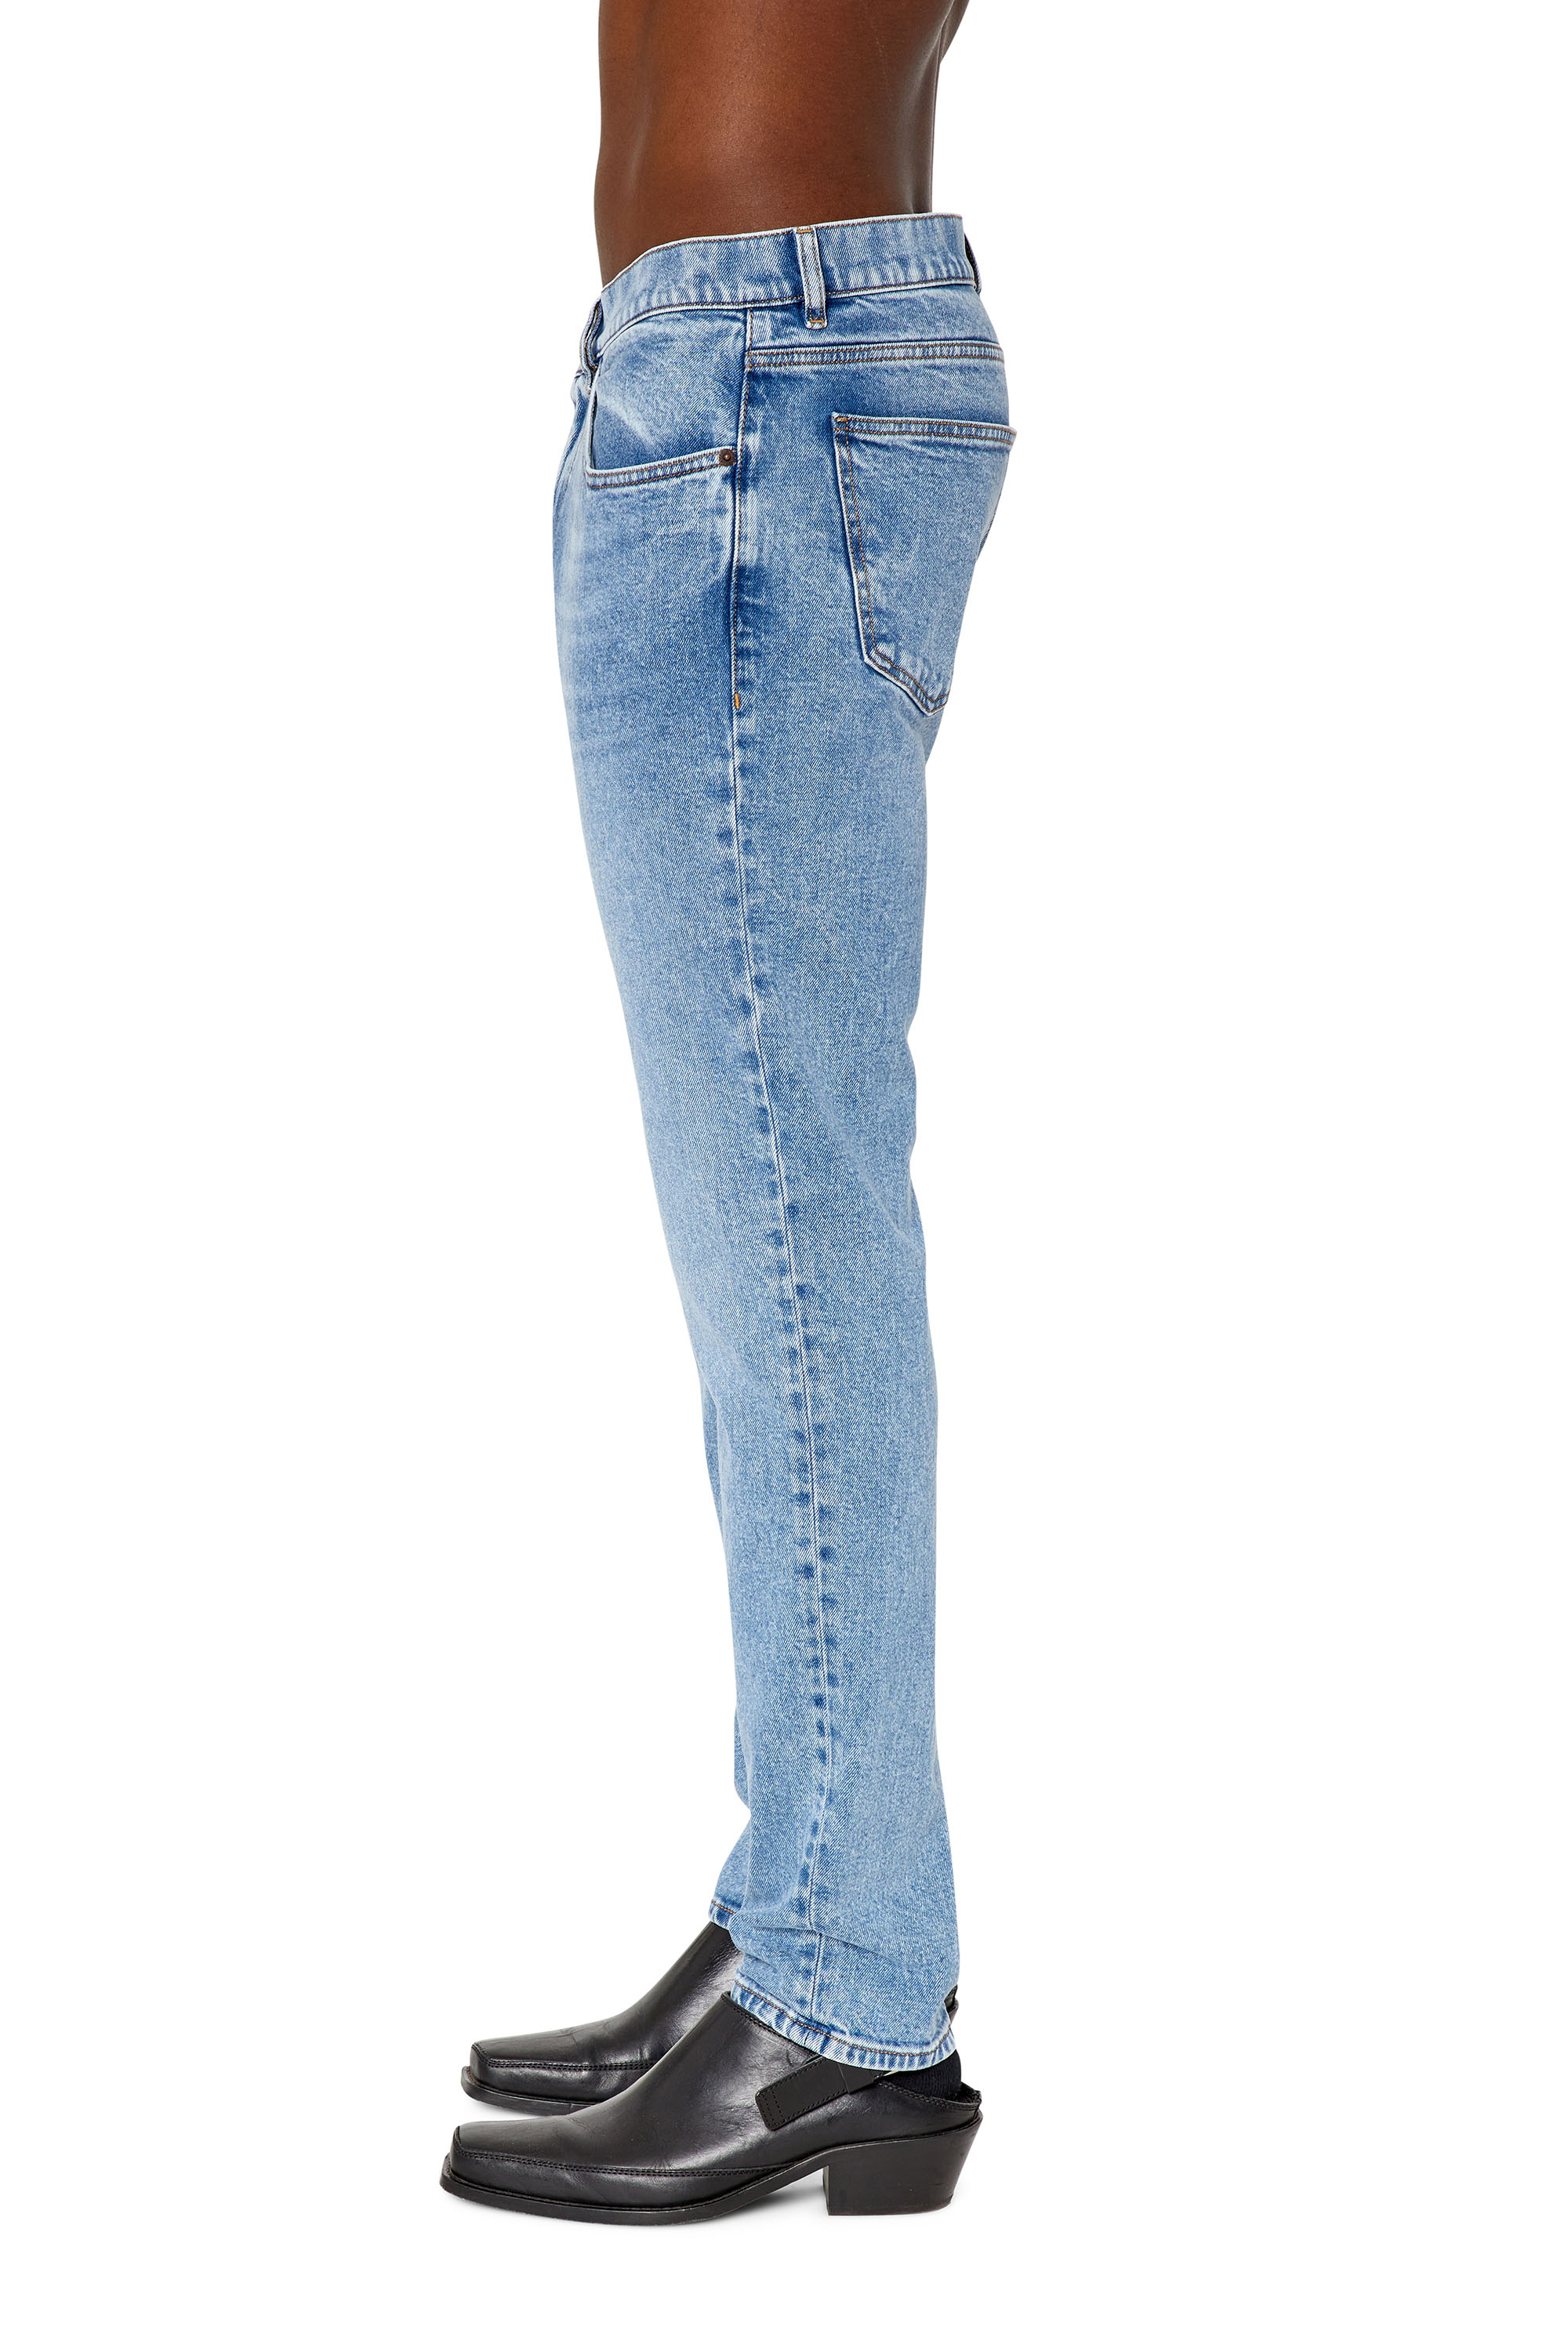 Diesel - Slim Jeans 2019 D-Strukt 9B92L, Light Blue - Image 4